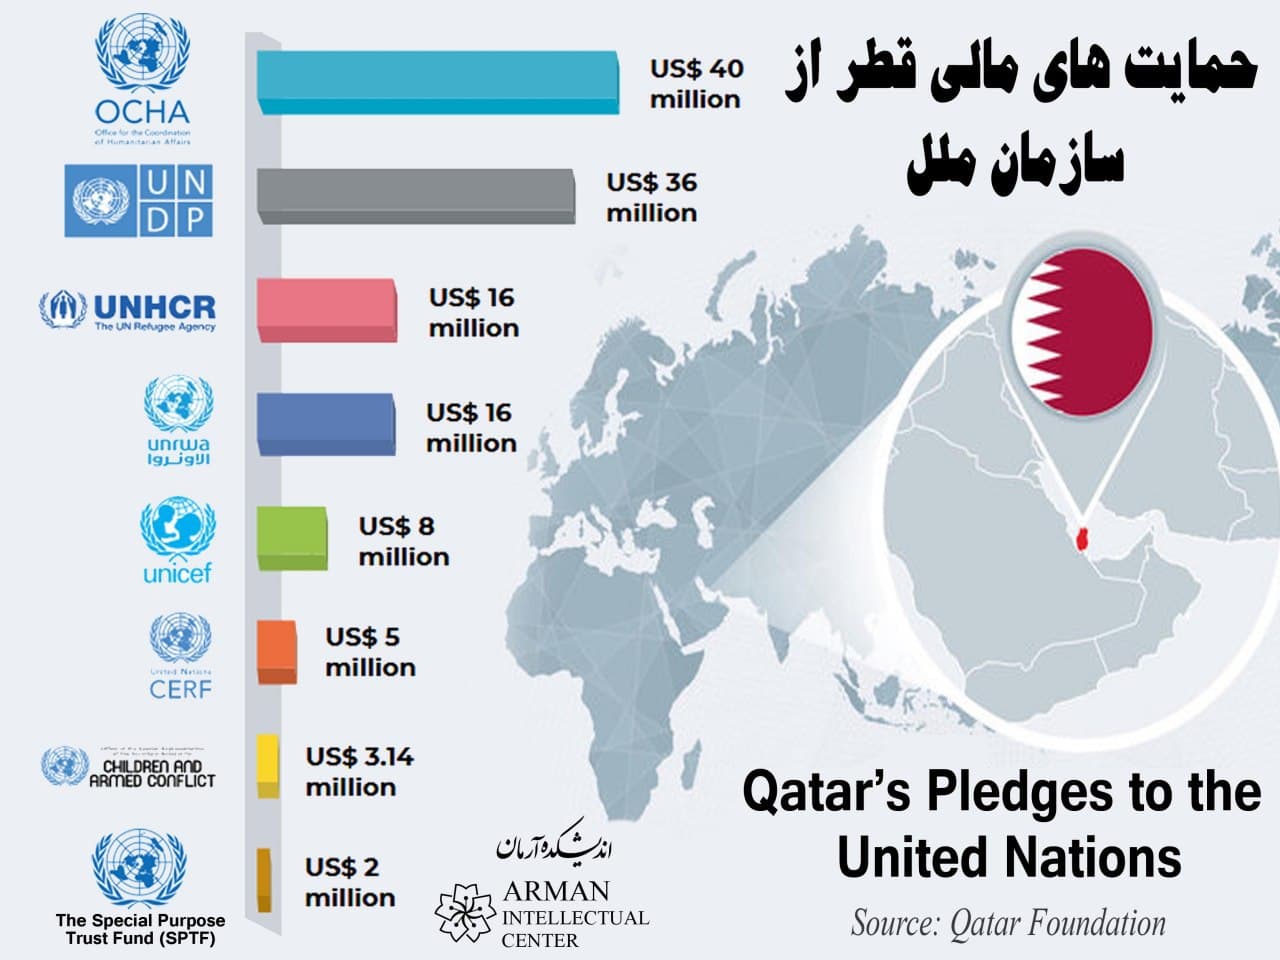 Qatars pledges to the UN